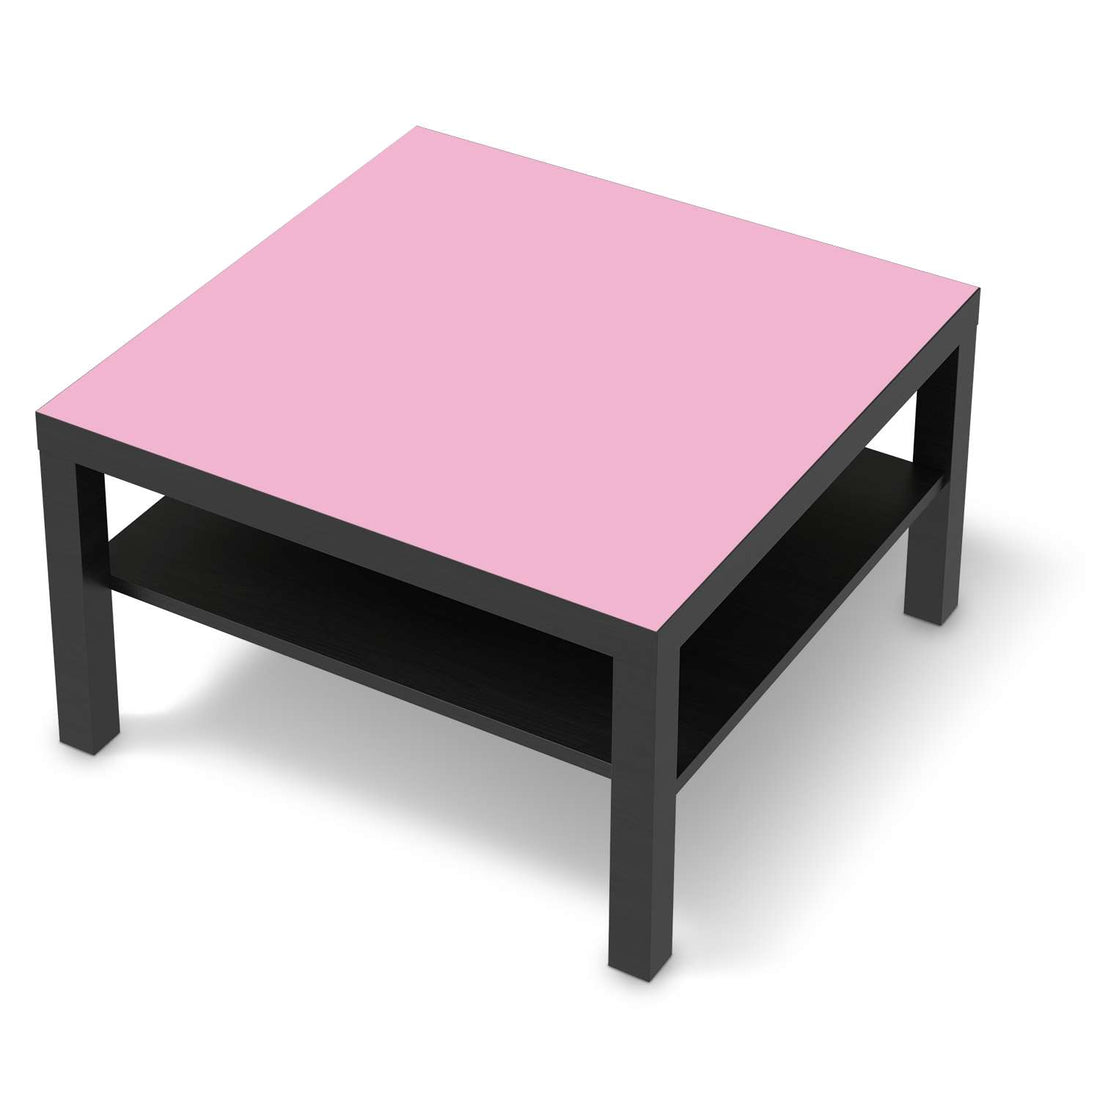 Selbstklebende Folie Pink Light - IKEA Lack Tisch 78x78 cm - schwarz